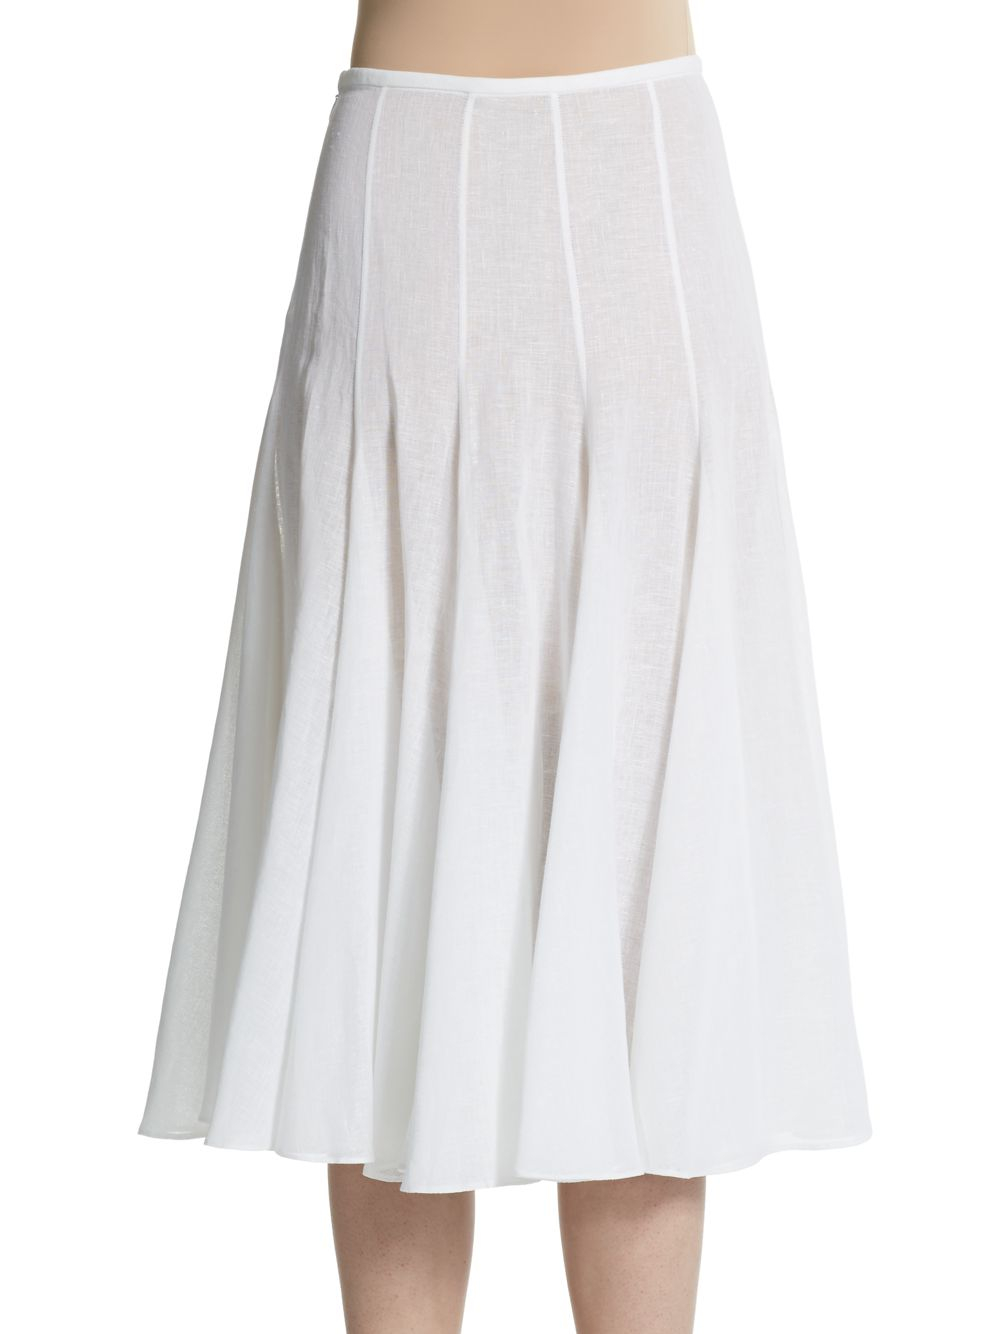 Lyst - Michael Kors Linen A-Line Skirt in White